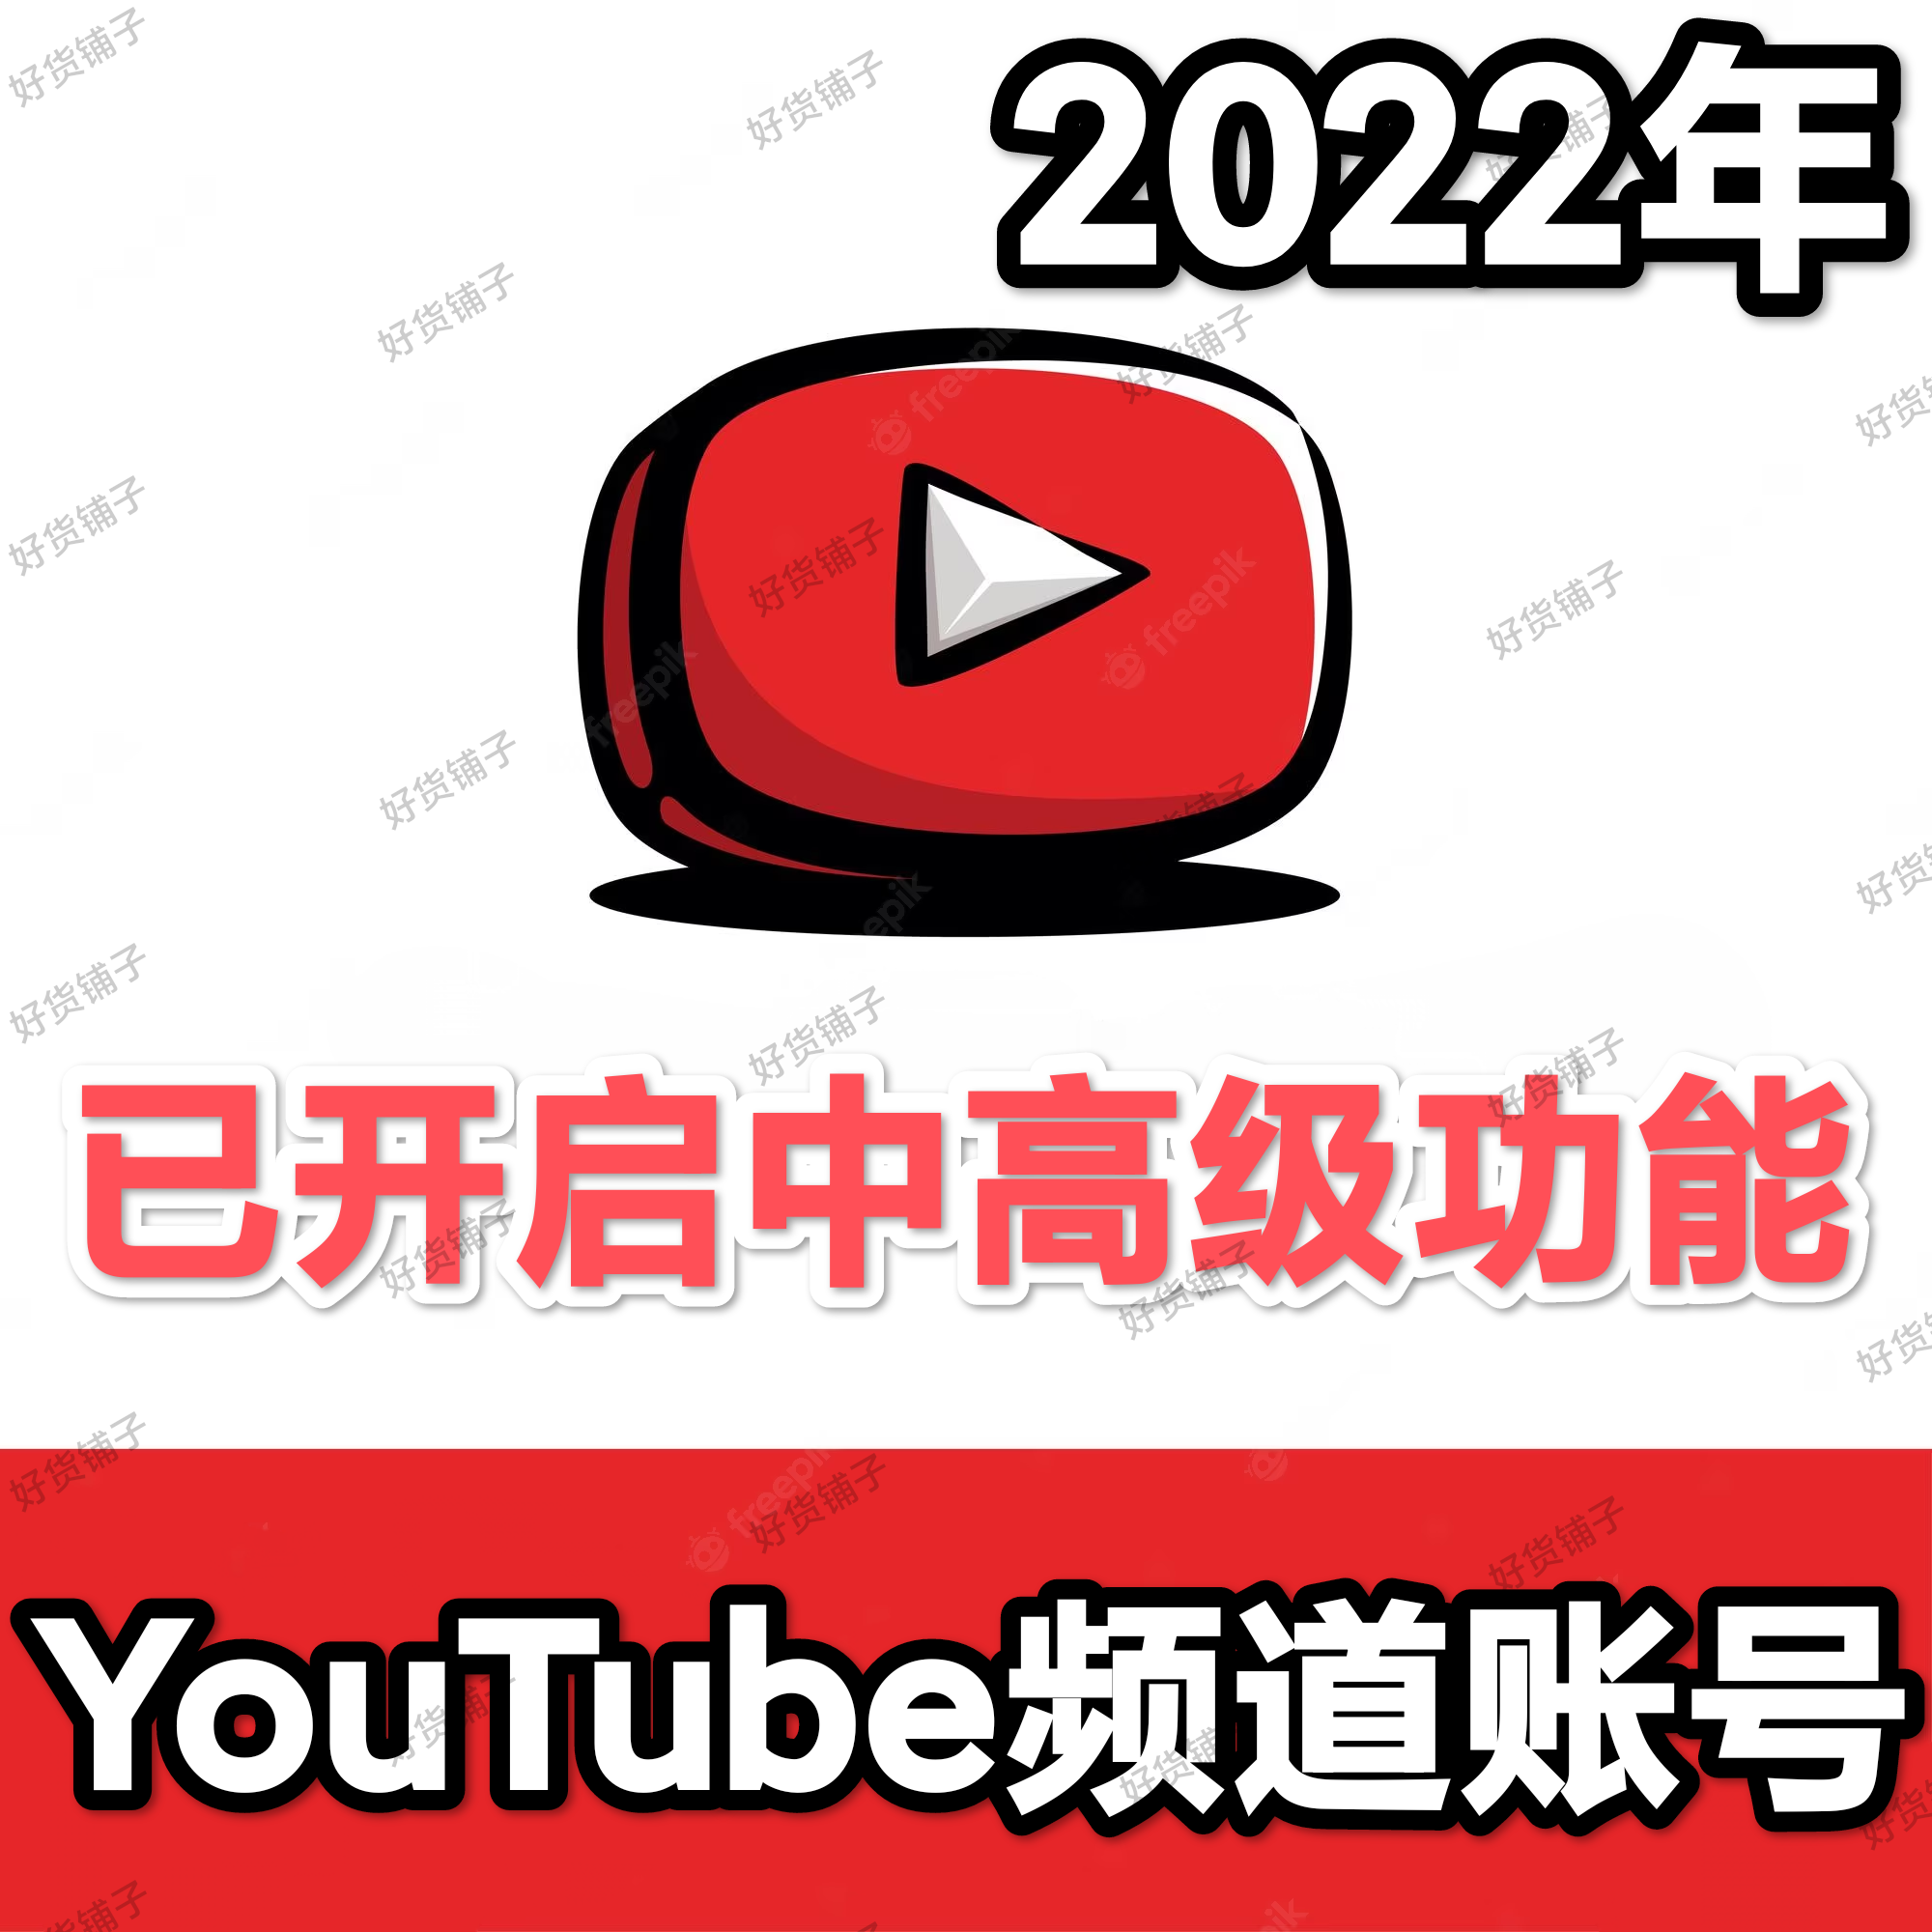 2022年YouTube频道老账号（16个粉丝订阅+126以上历史播放+5个视频）（已开启中高级频道功能+支持放置外部链接等）